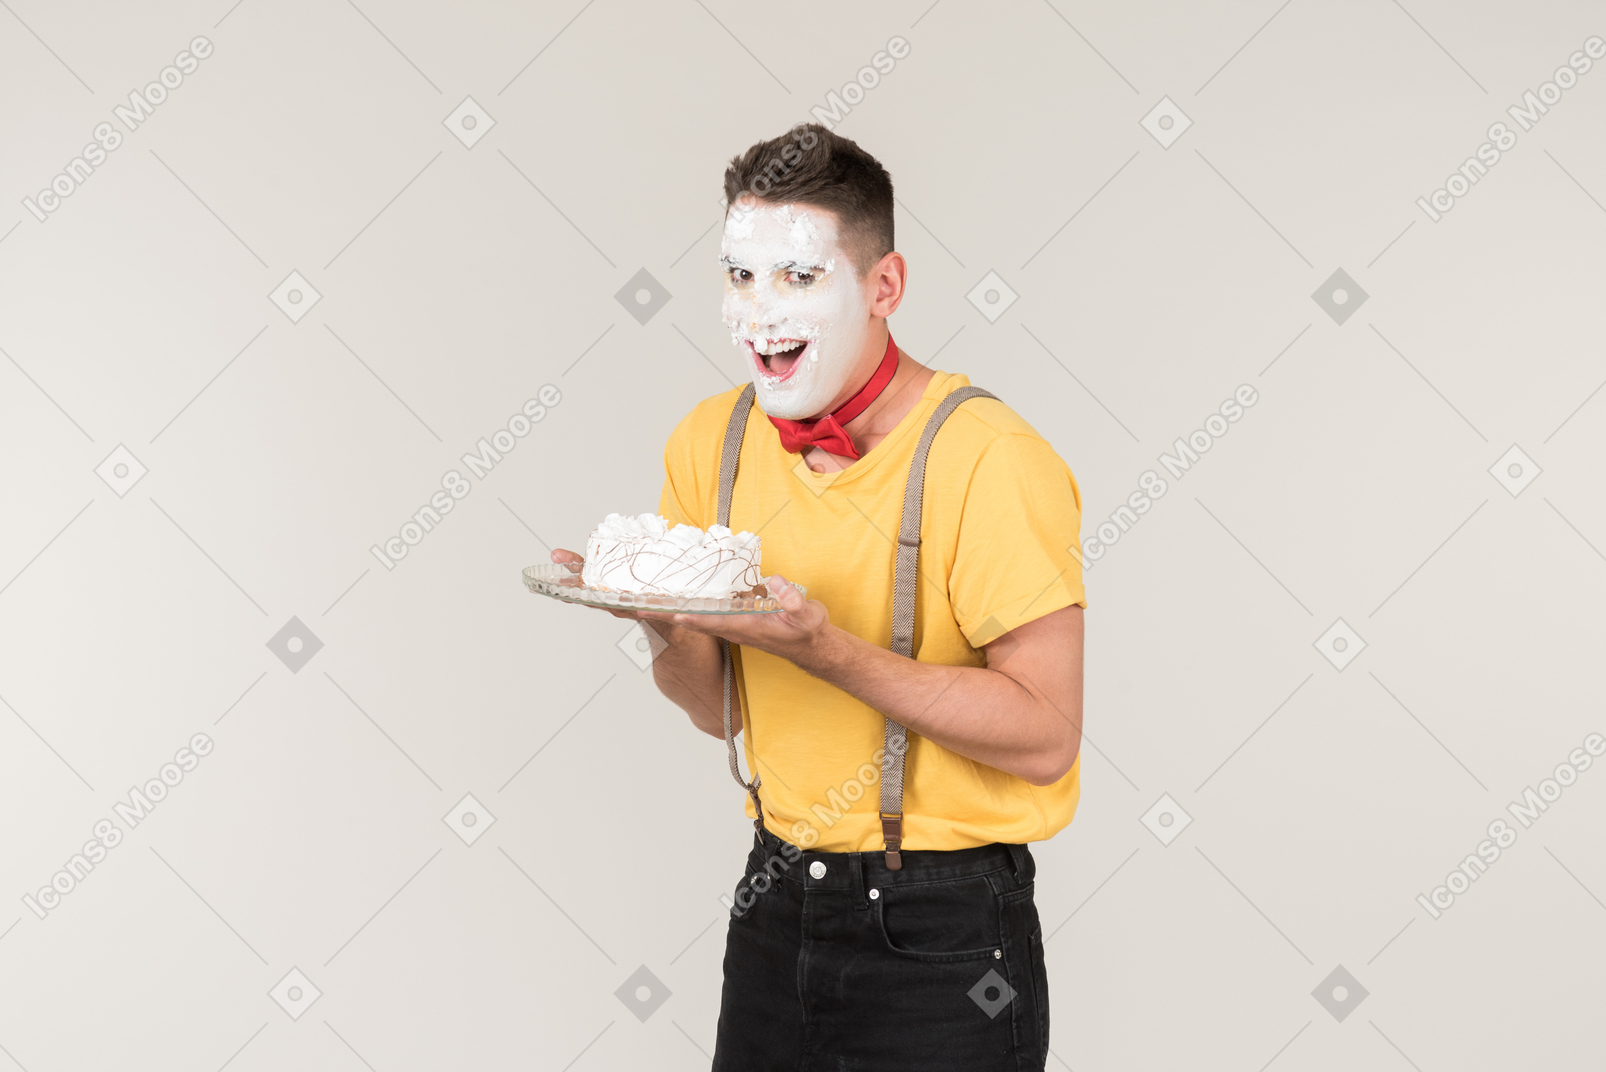 케이크를 들고 그의 얼굴에 케이크 크림과 함께 남성 광대